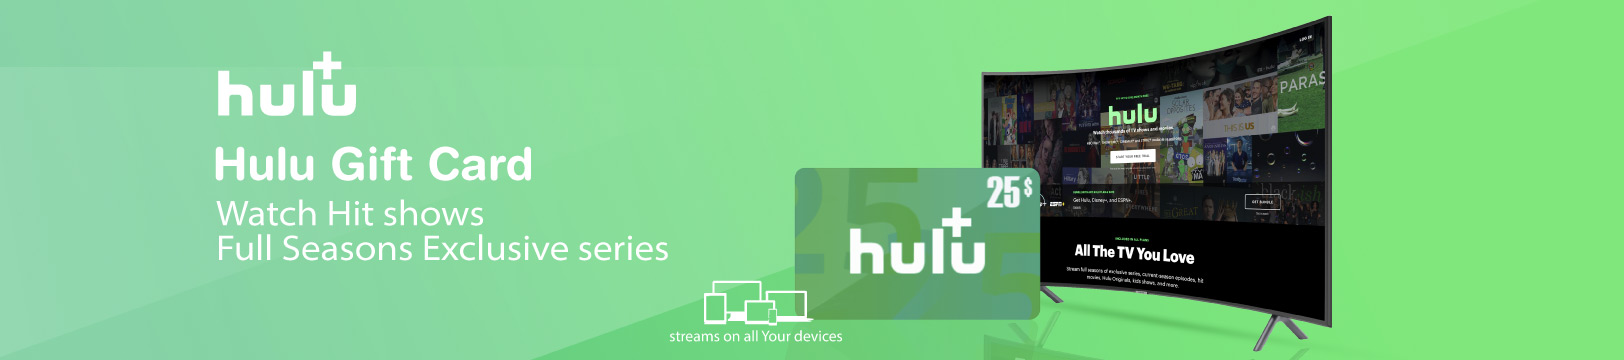 Hulu+